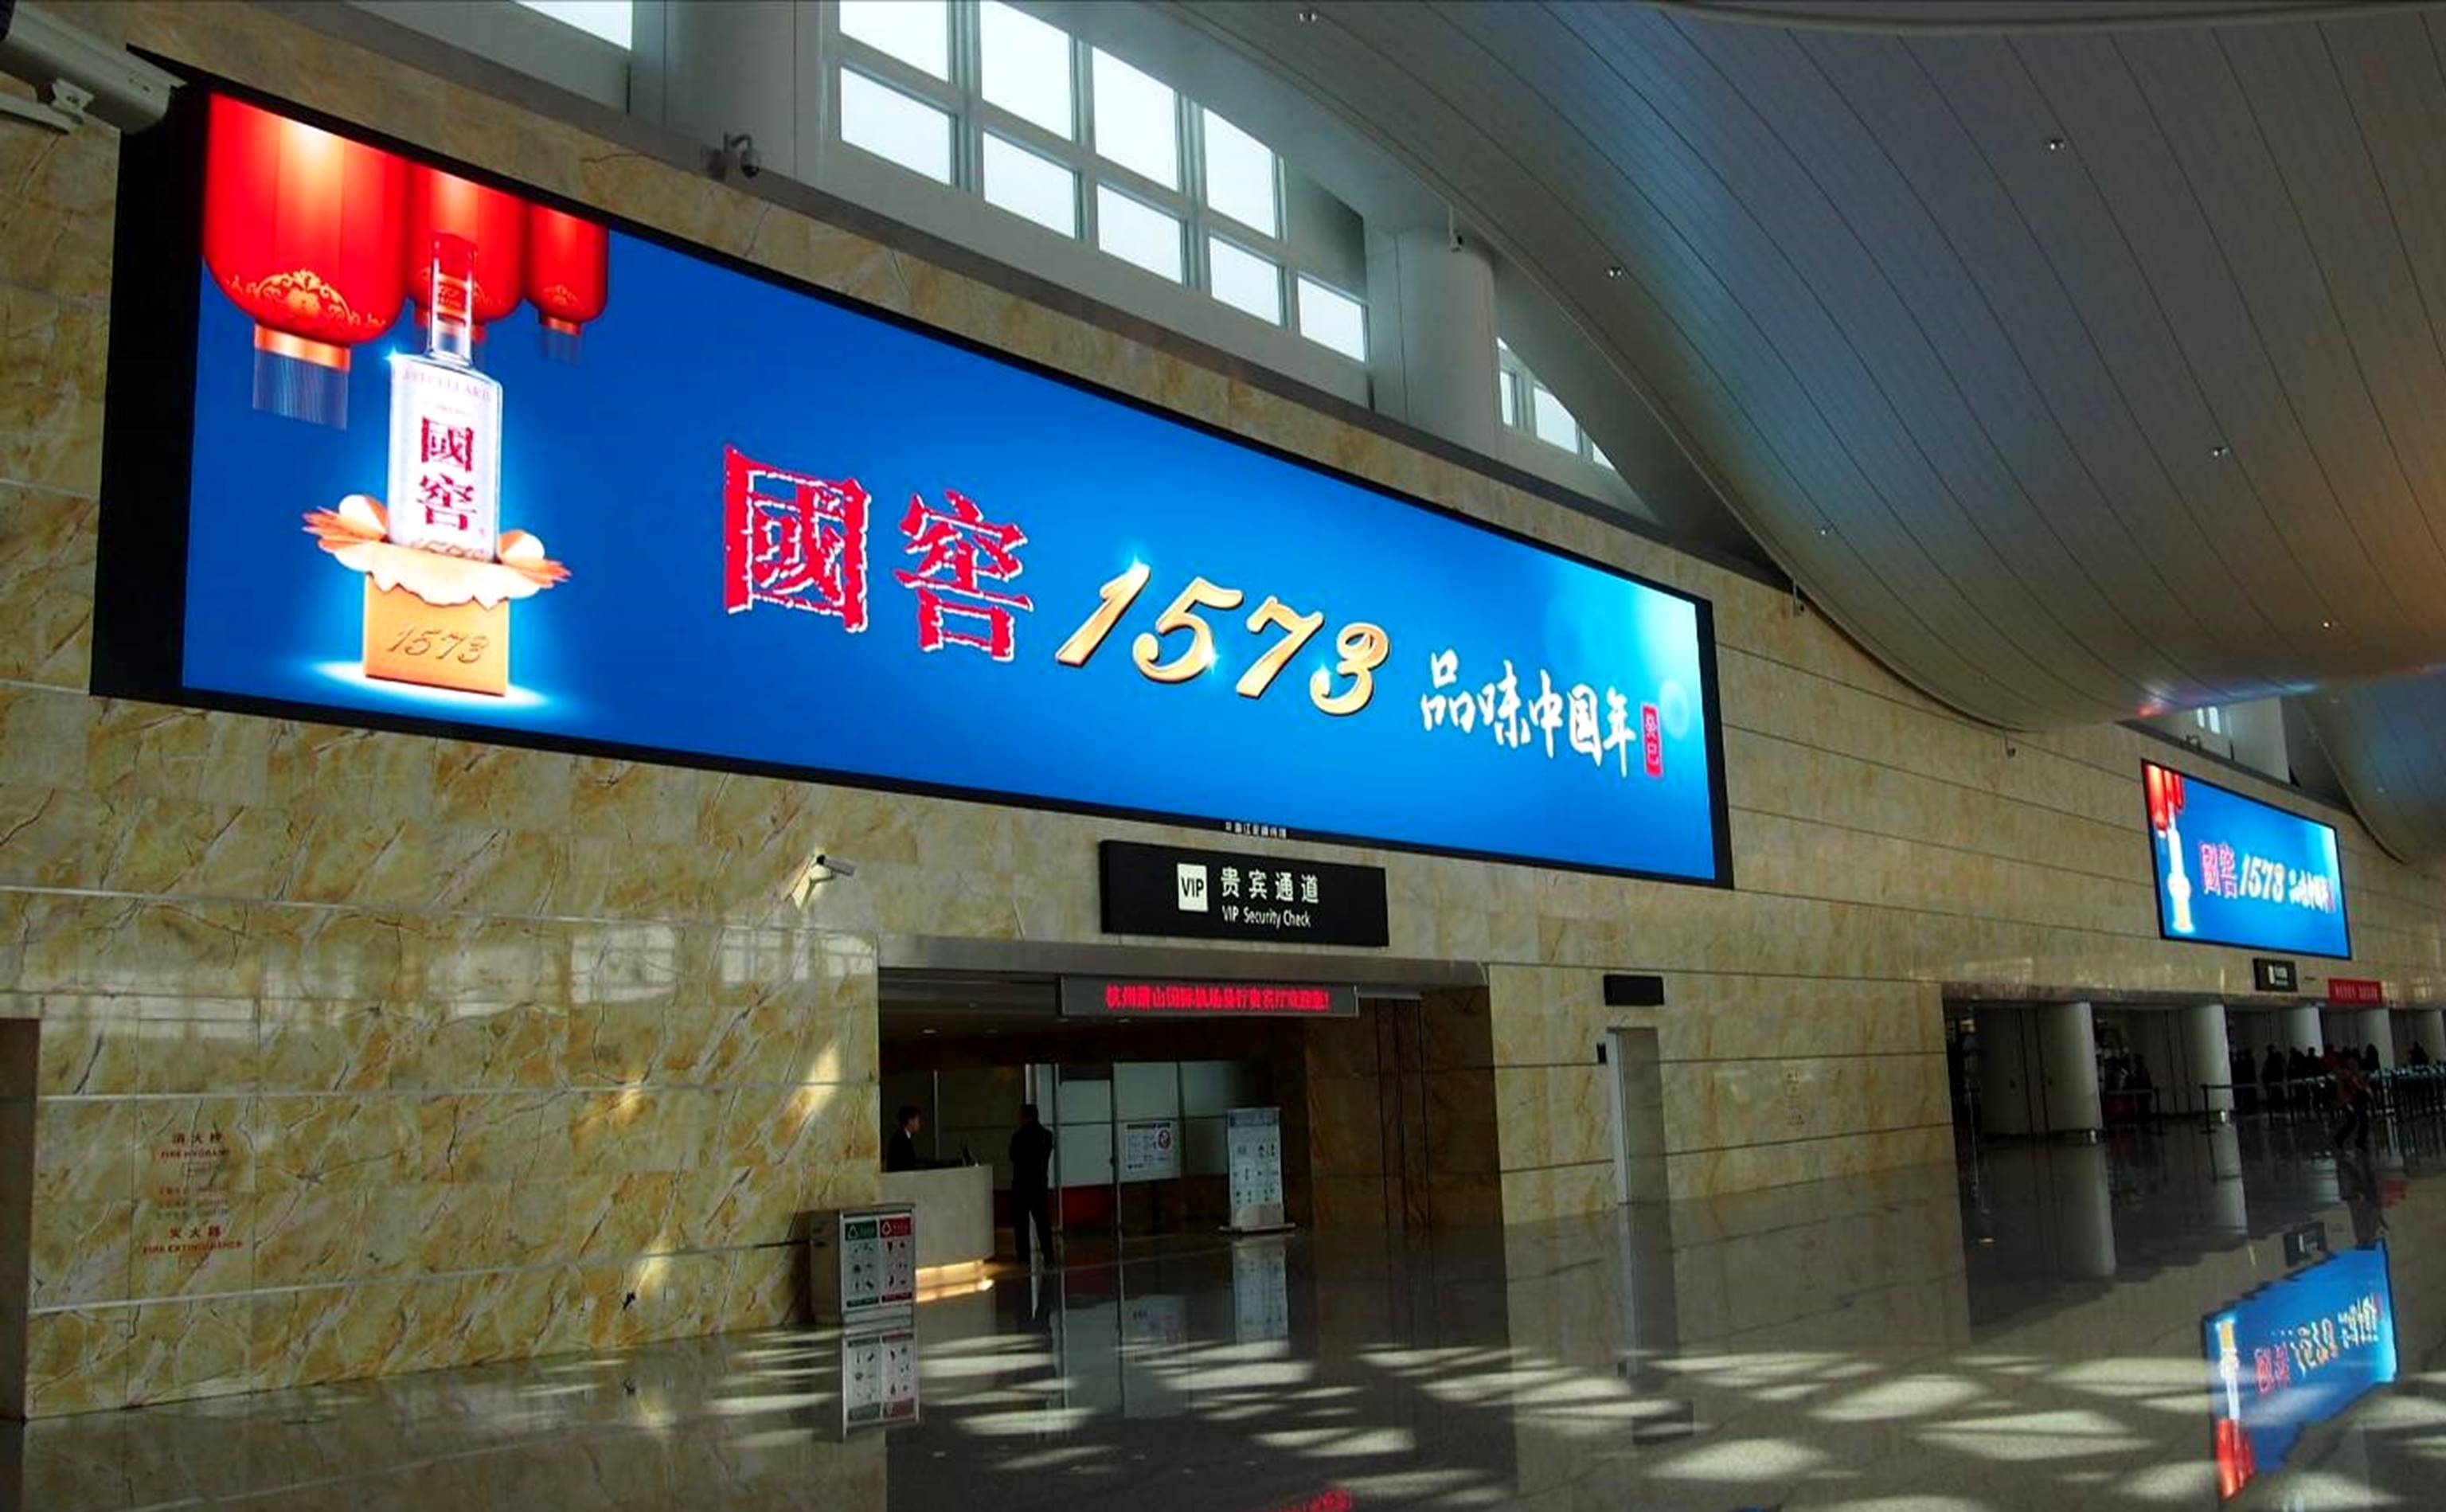 杭州萧山机场安检屏幕广告